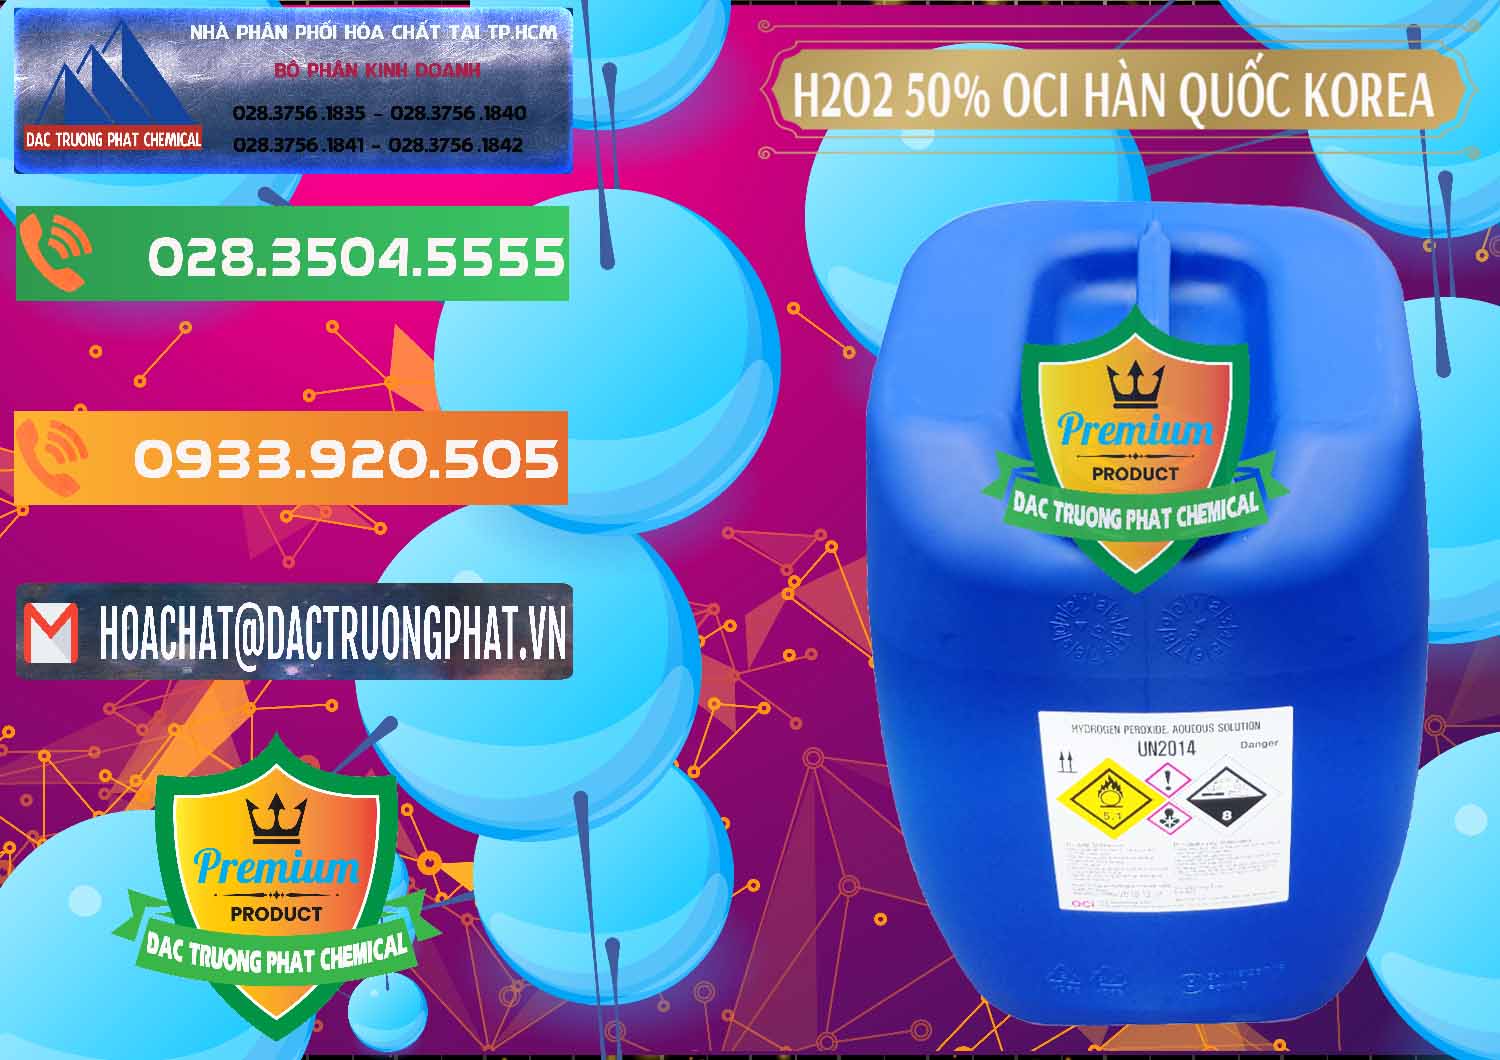 Công ty chuyên nhập khẩu và bán H2O2 - Hydrogen Peroxide 50% OCI Hàn Quốc Korea - 0075 - Nơi phân phối _ bán hóa chất tại TP.HCM - hoachatxulynuoc.com.vn